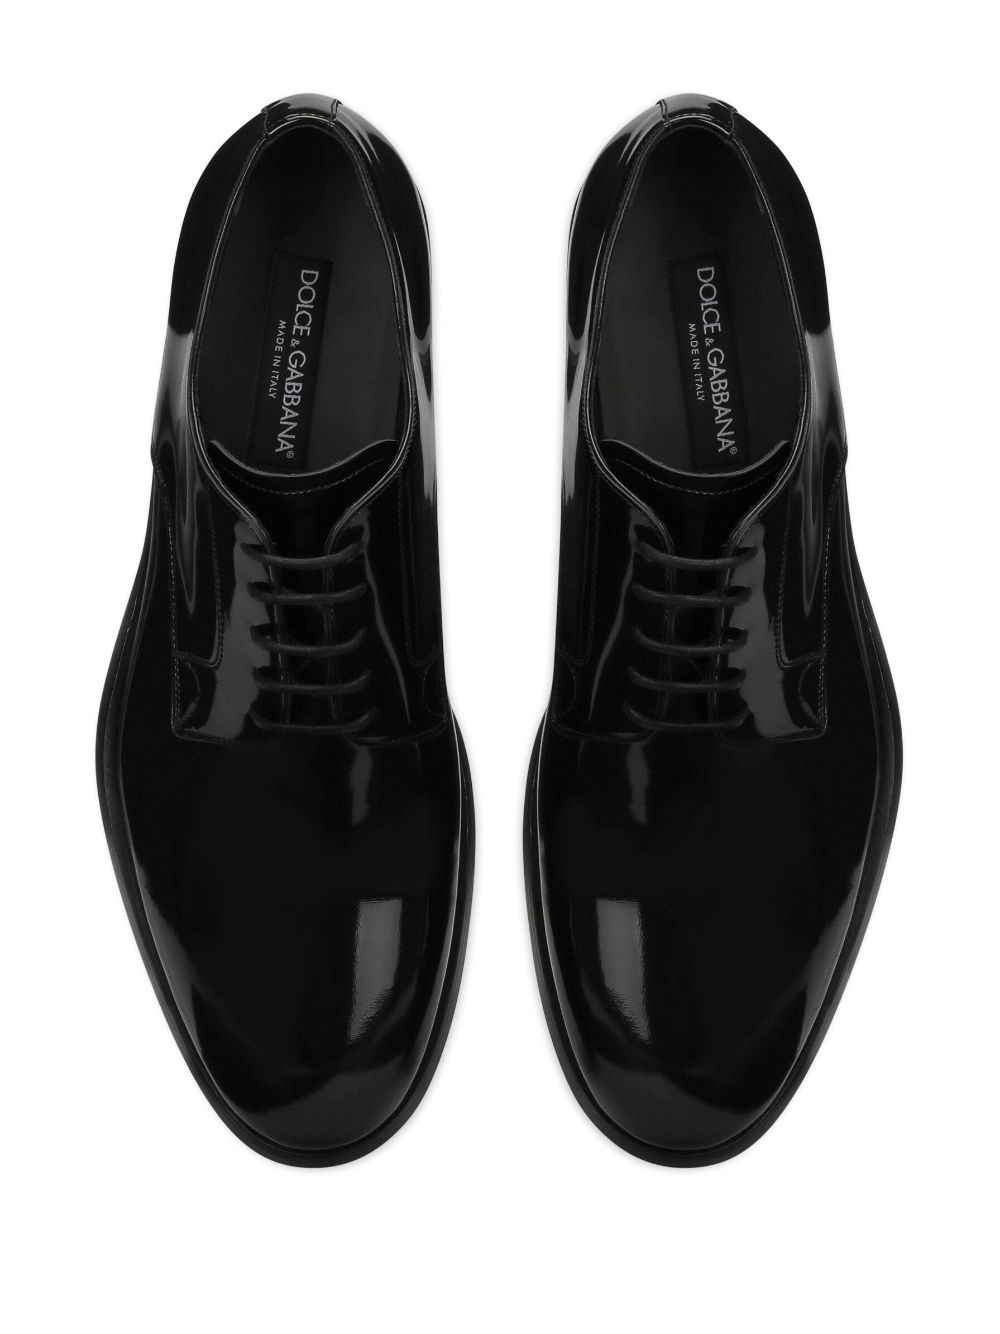 Dolce & Gabbana Boots Black